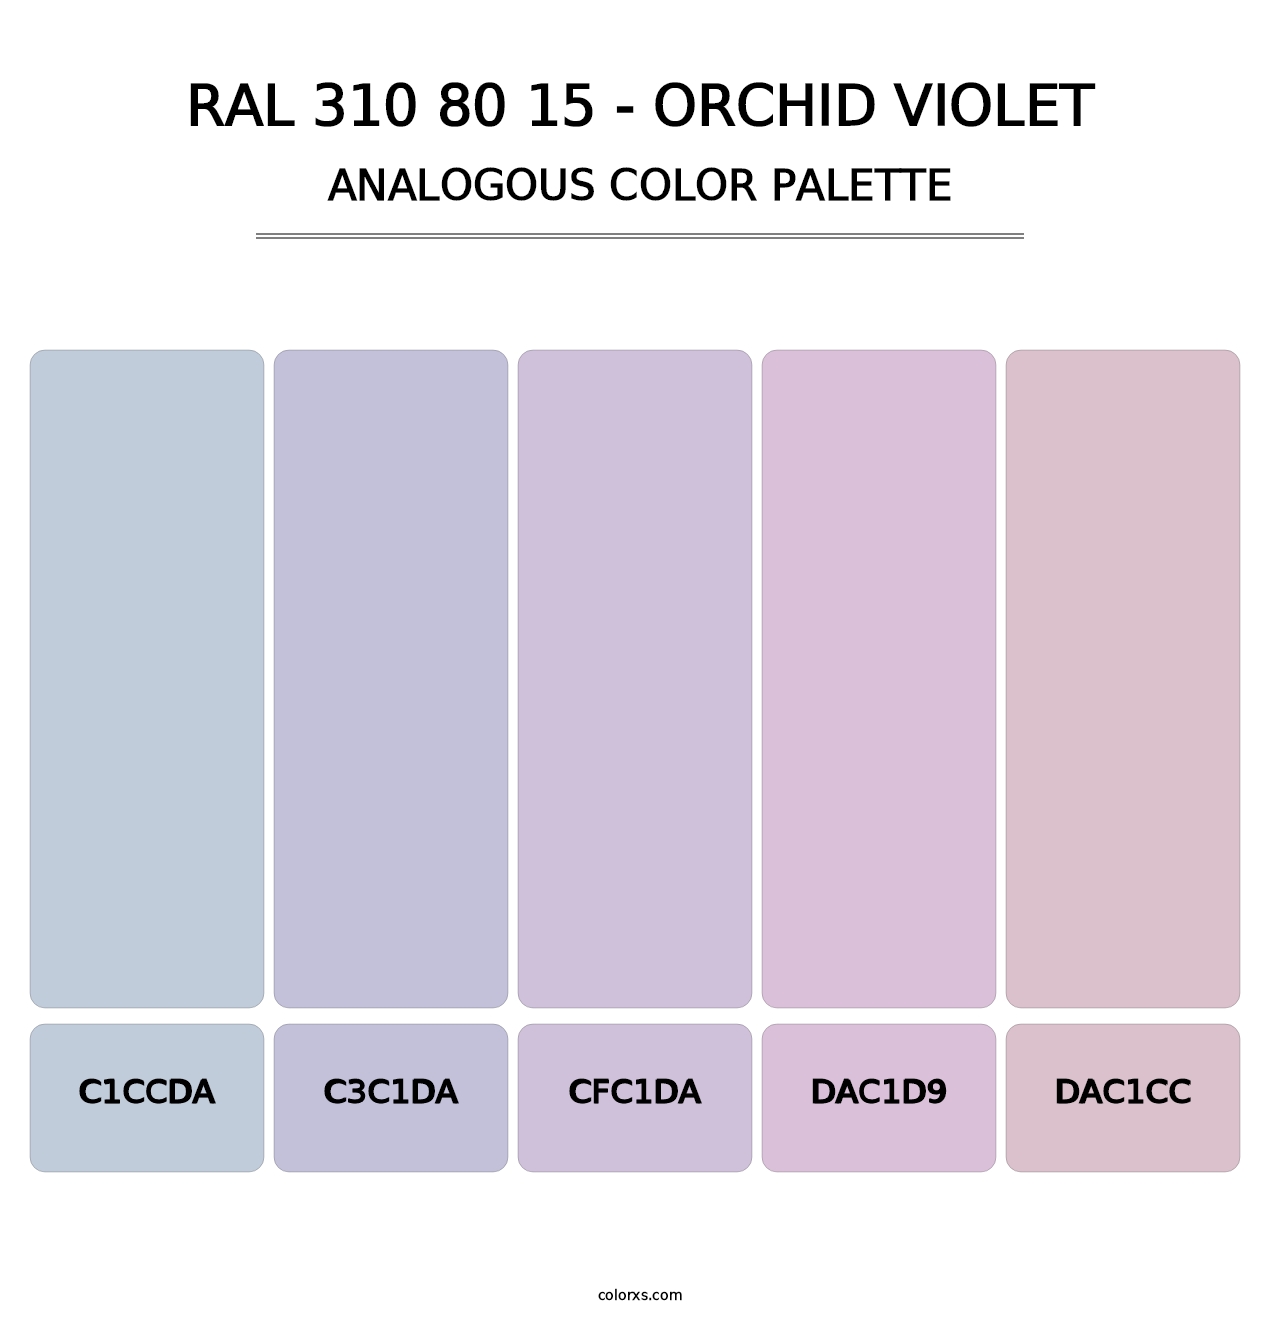 RAL 310 80 15 - Orchid Violet - Analogous Color Palette